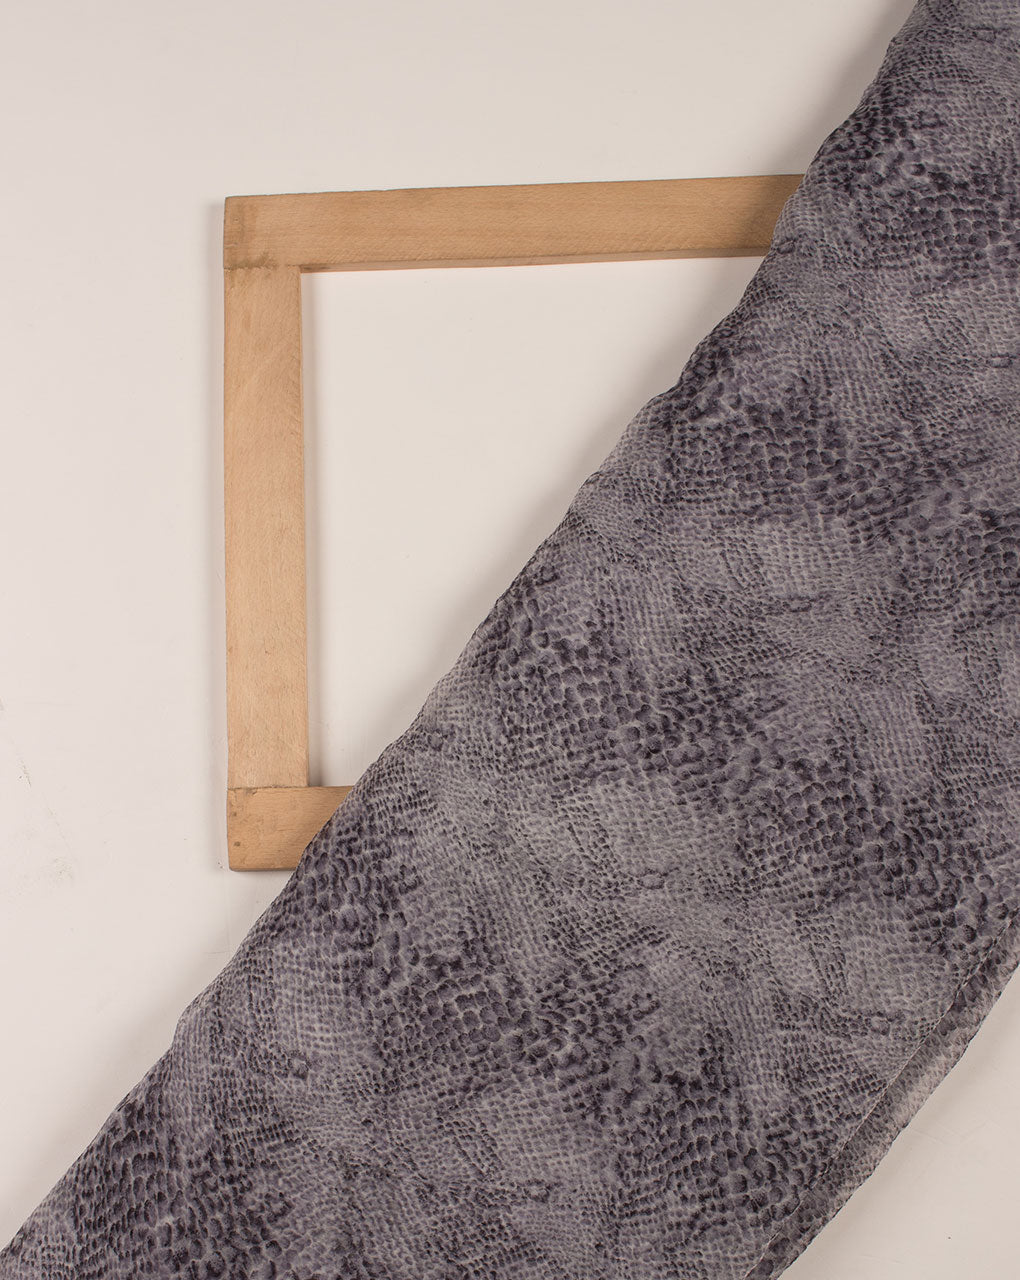 Grey Screen Print Chiffon Fabric - Fabriclore.com